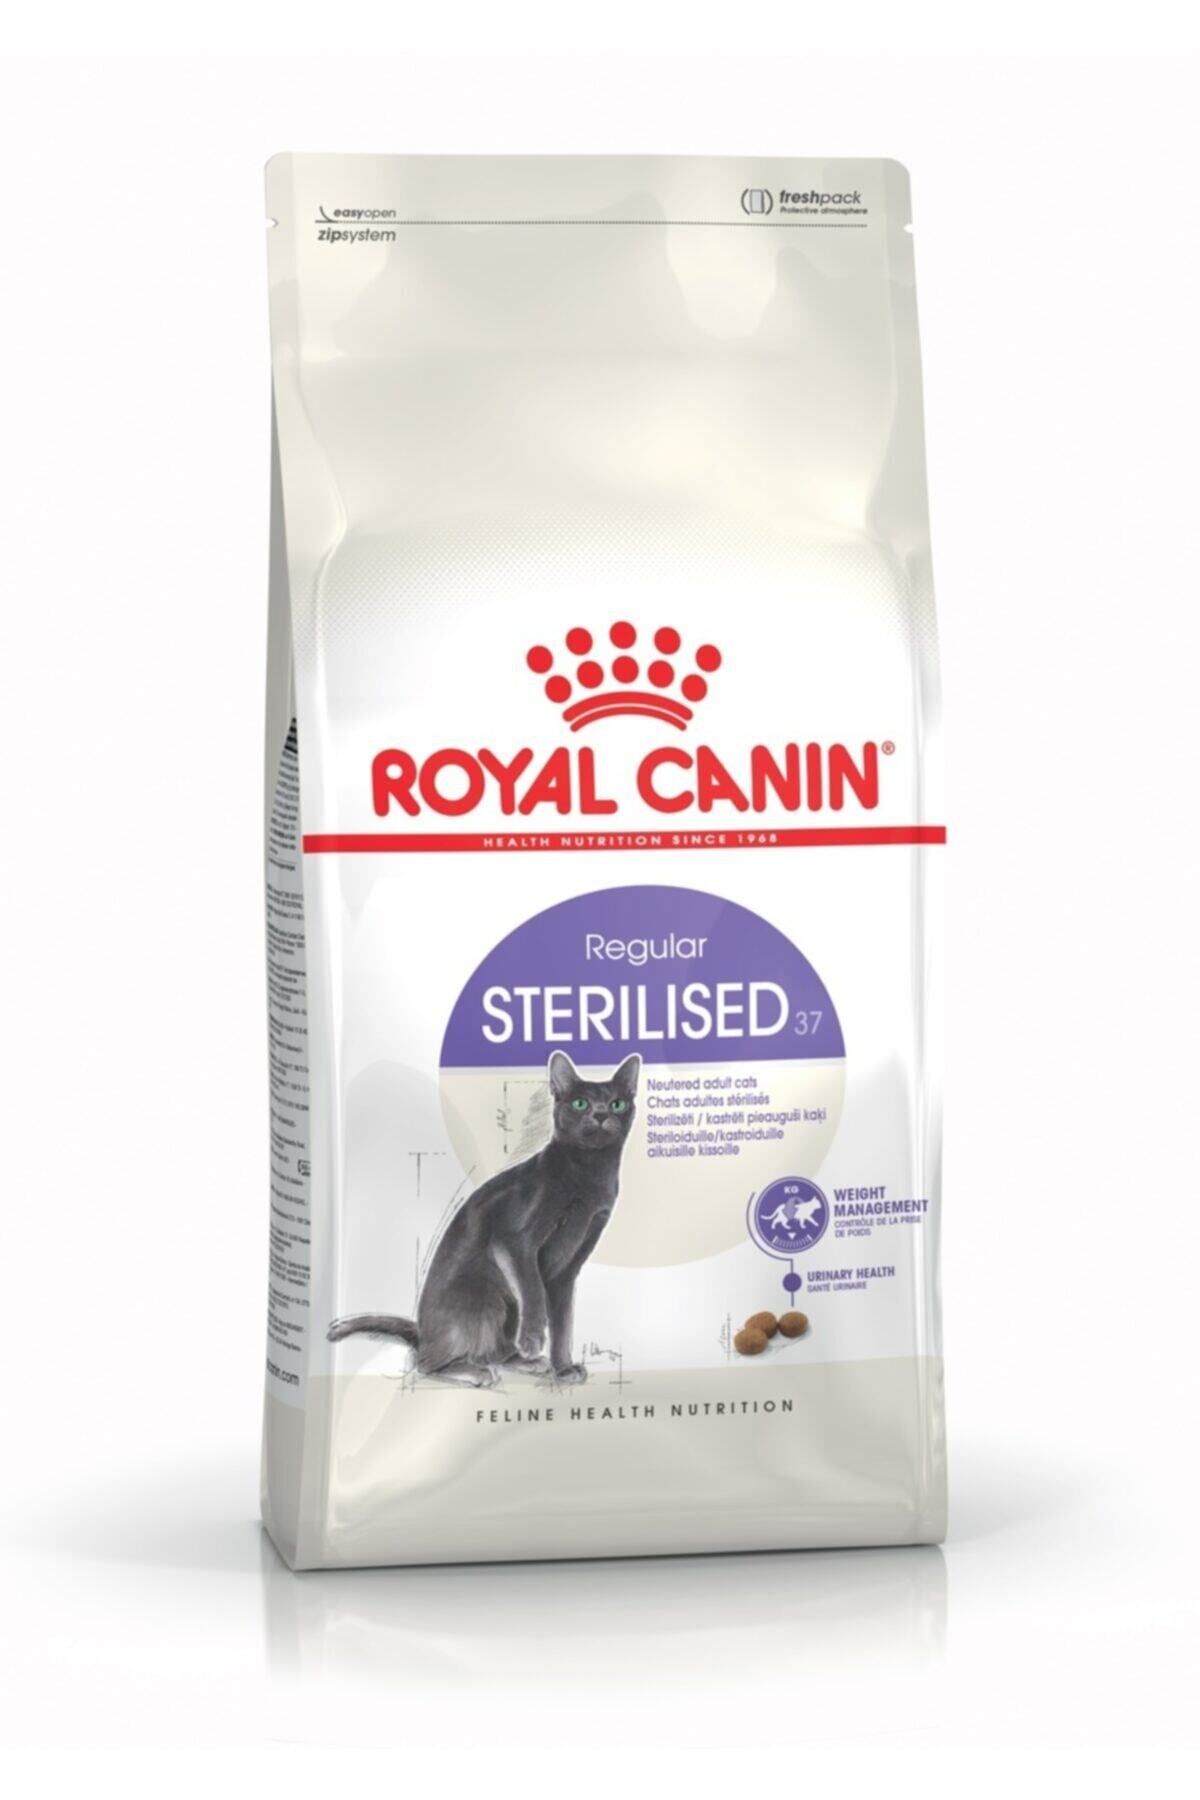 Royal Canin Sterilised 37 4 Kg Kısırlaştırılmış Kuru Kedi Maması